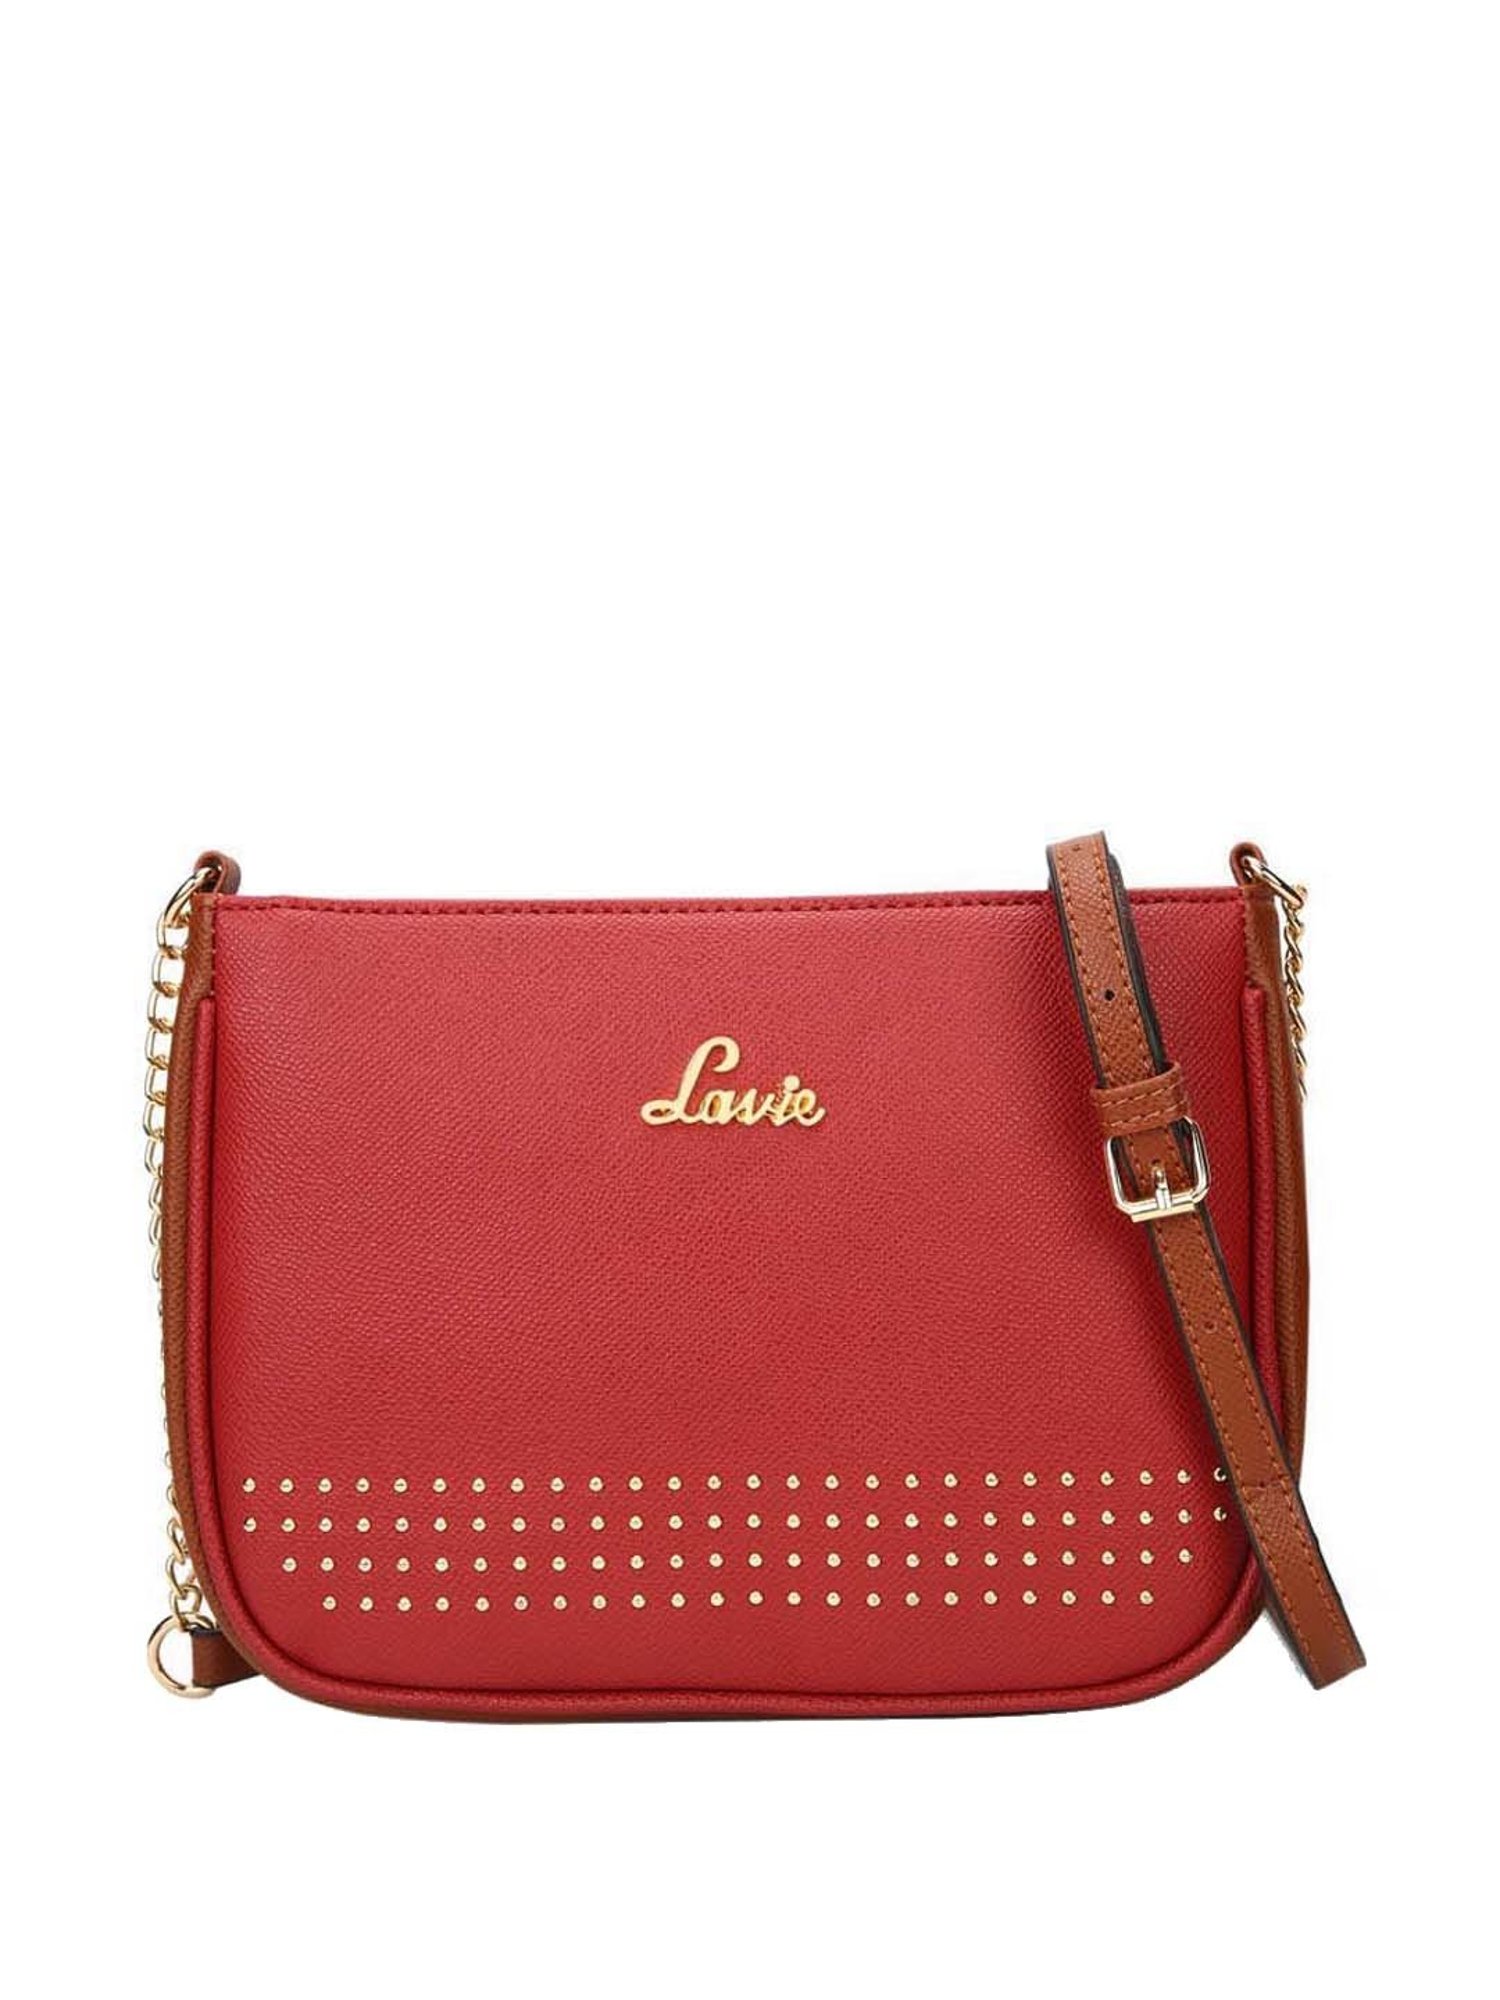 Buy Lavie Women's Katie Satchel Bag (P Blue) at Amazon.in